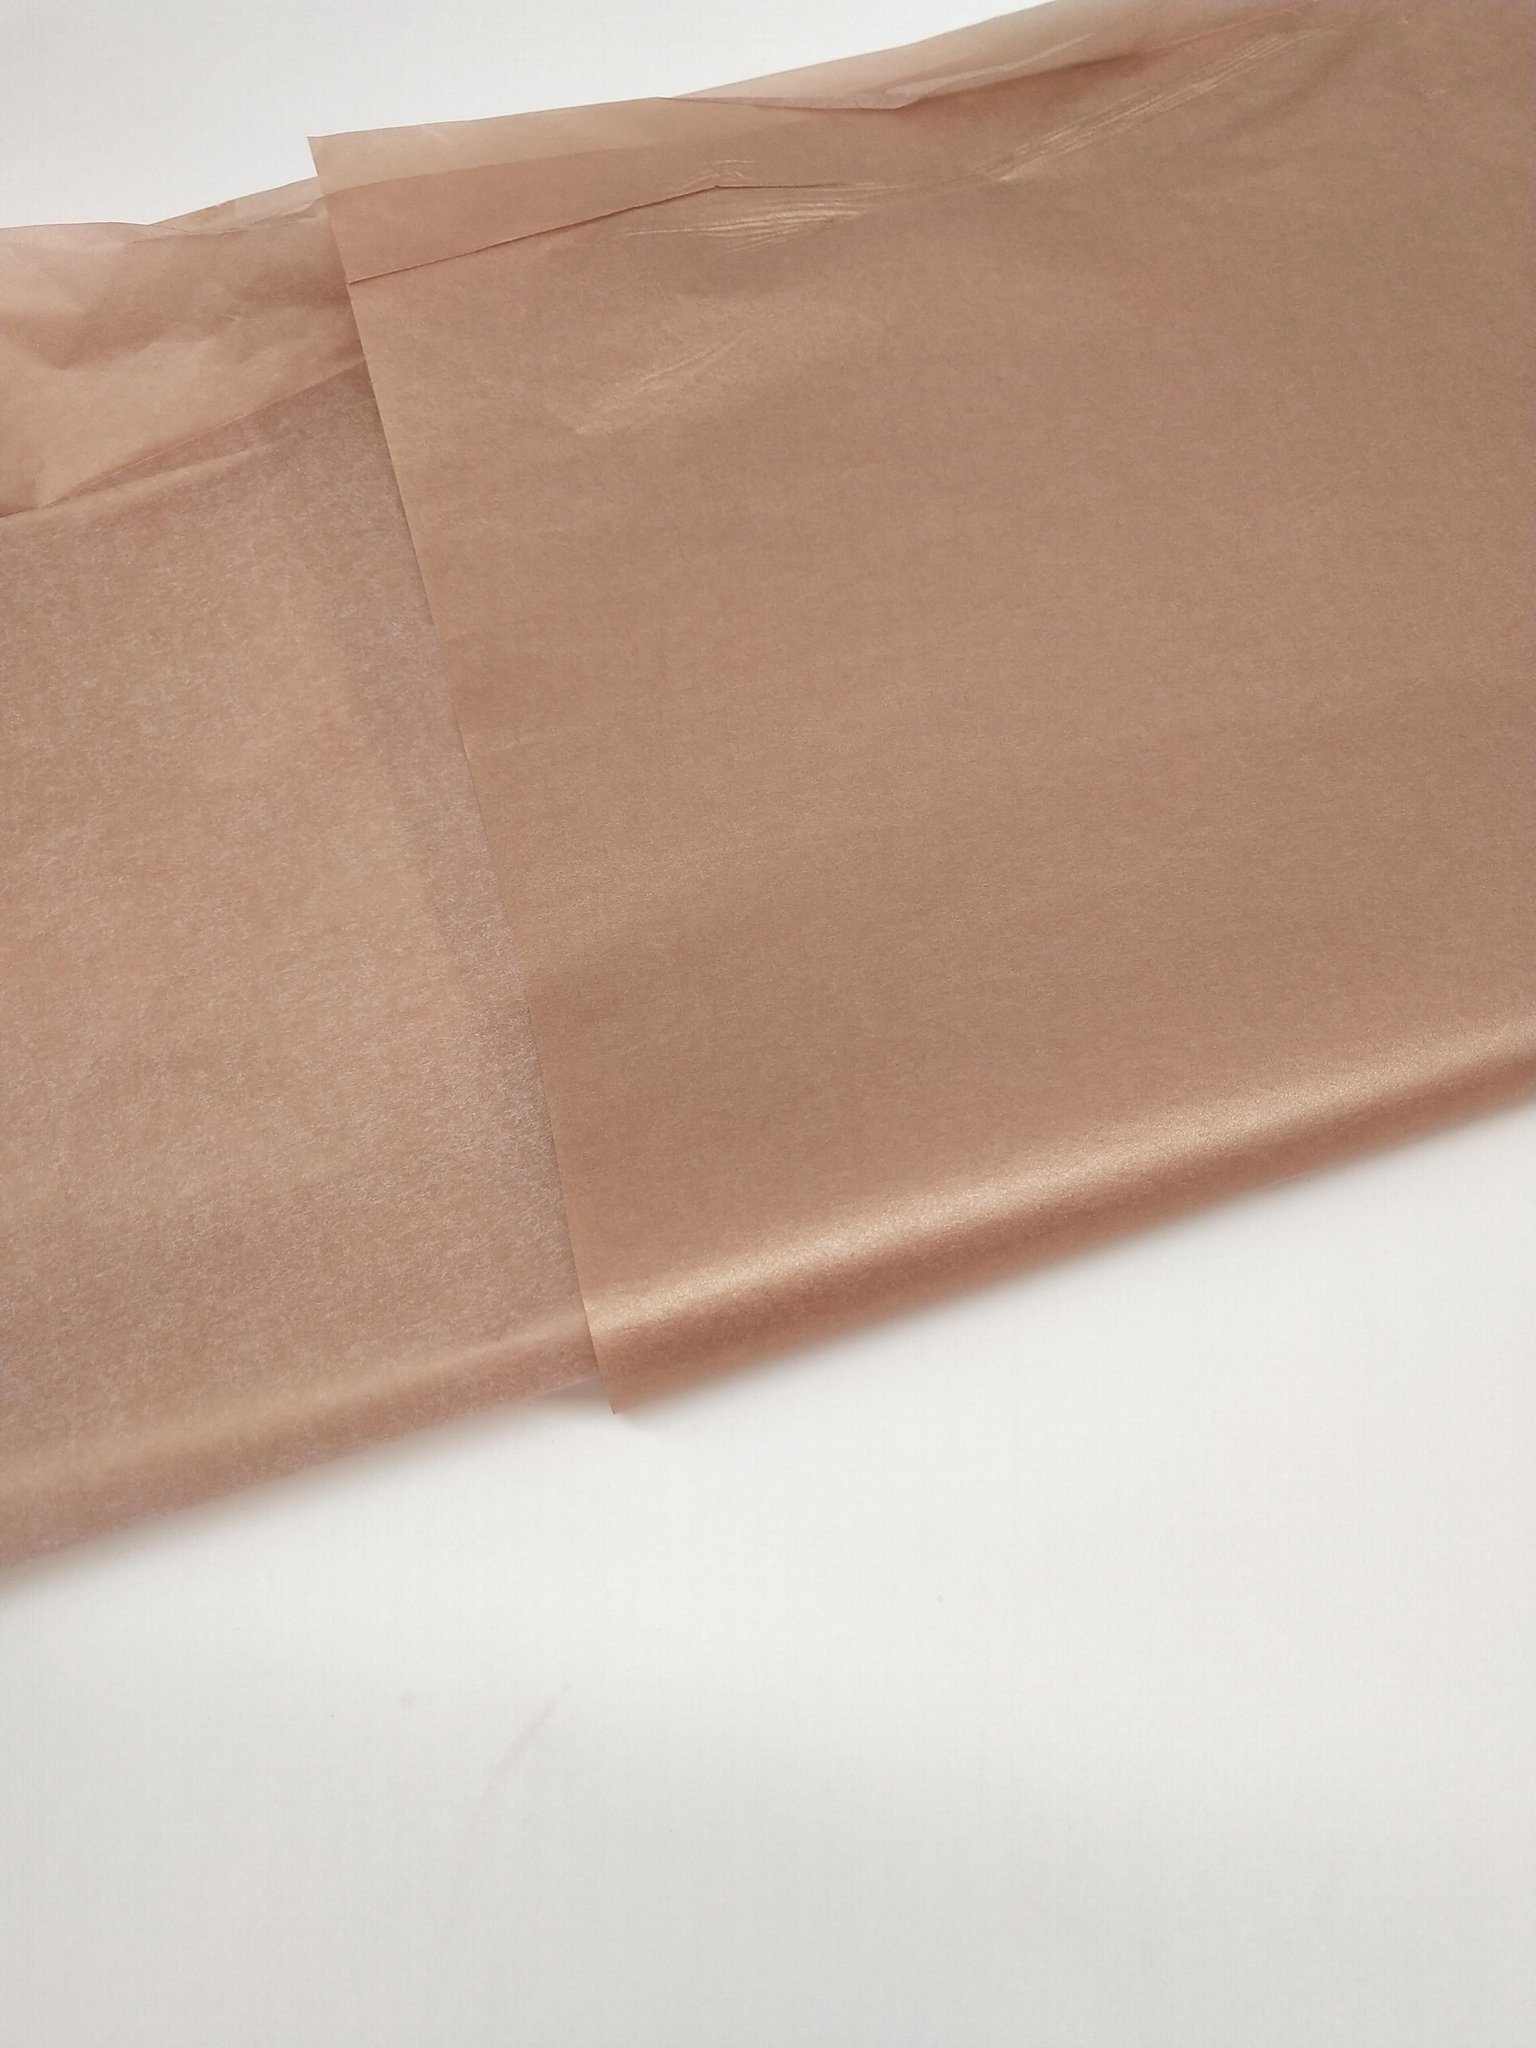 17-22克棉紙滿版印刷珠光粉 節日禮品鮮花包裝盒產品包裝紙tissue paper 3